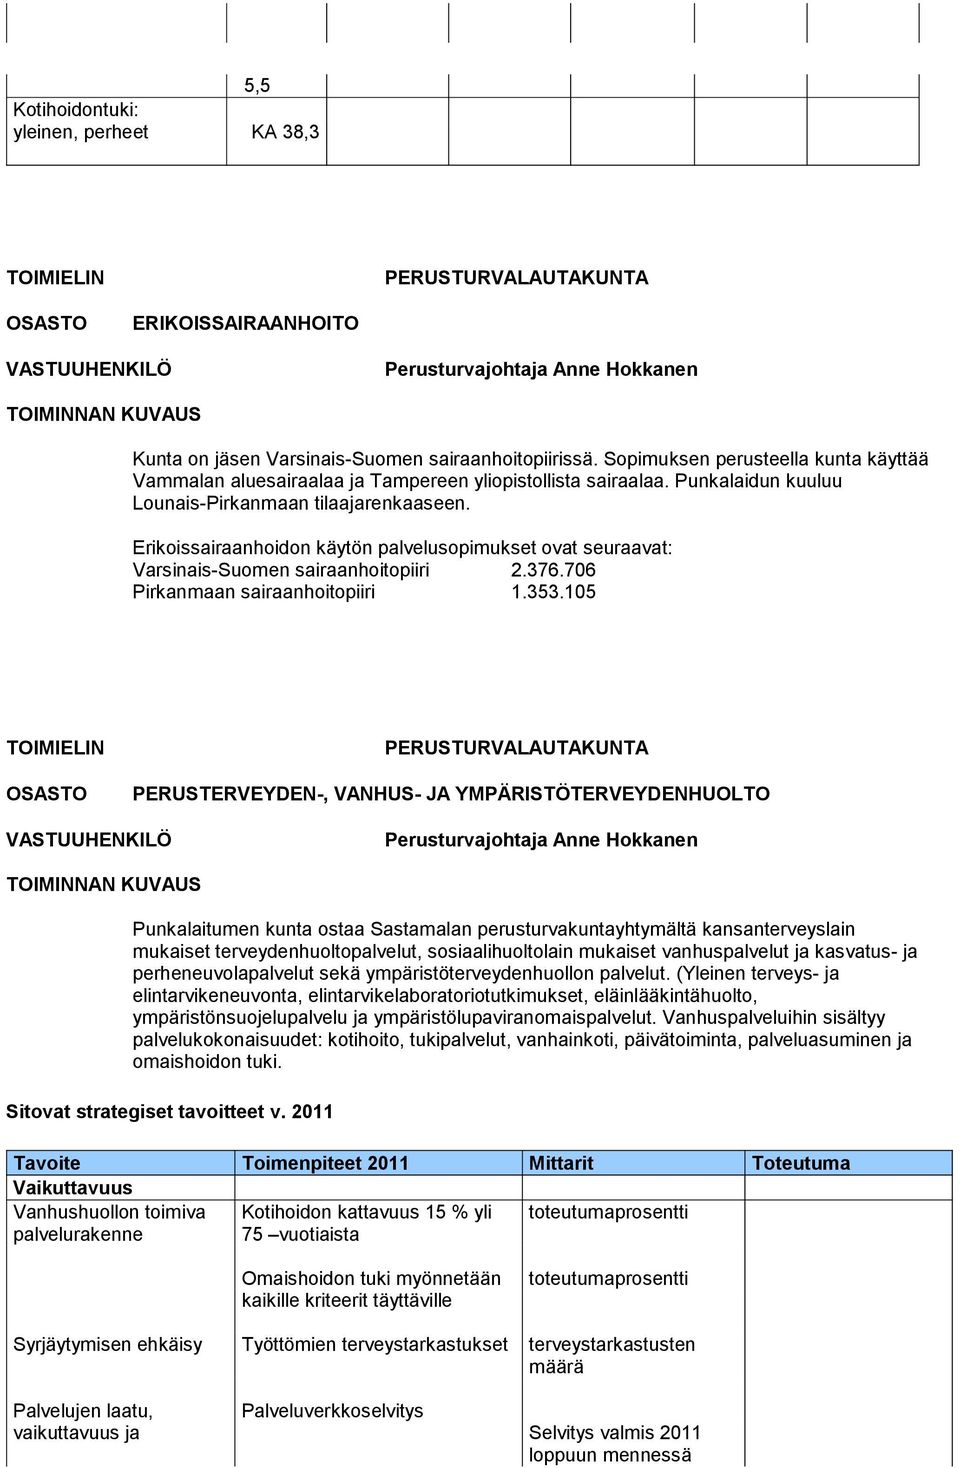 Erikoissairaanhoidon käytön palvelusopimukset ovat seuraavat: Varsinais-Suomen sairaanhoitopiiri 2.376.706 Pirkanmaan sairaanhoitopiiri 1.353.